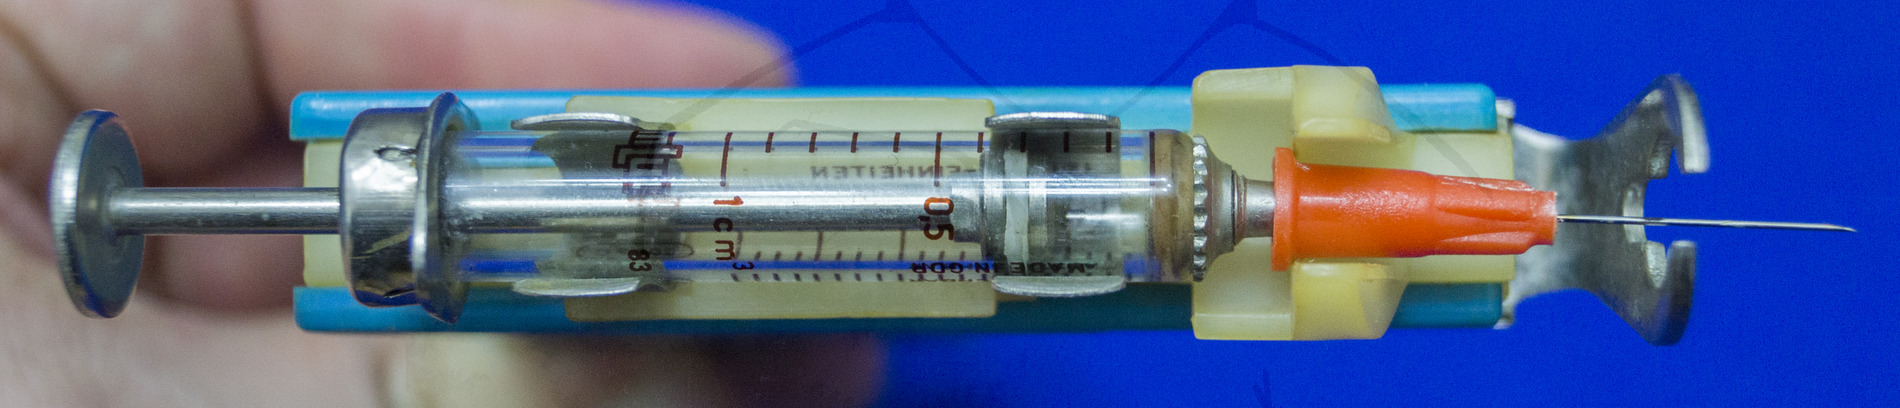 Insulininjektor vom VEB MLW, Mit eingelegter Spritze, von oben